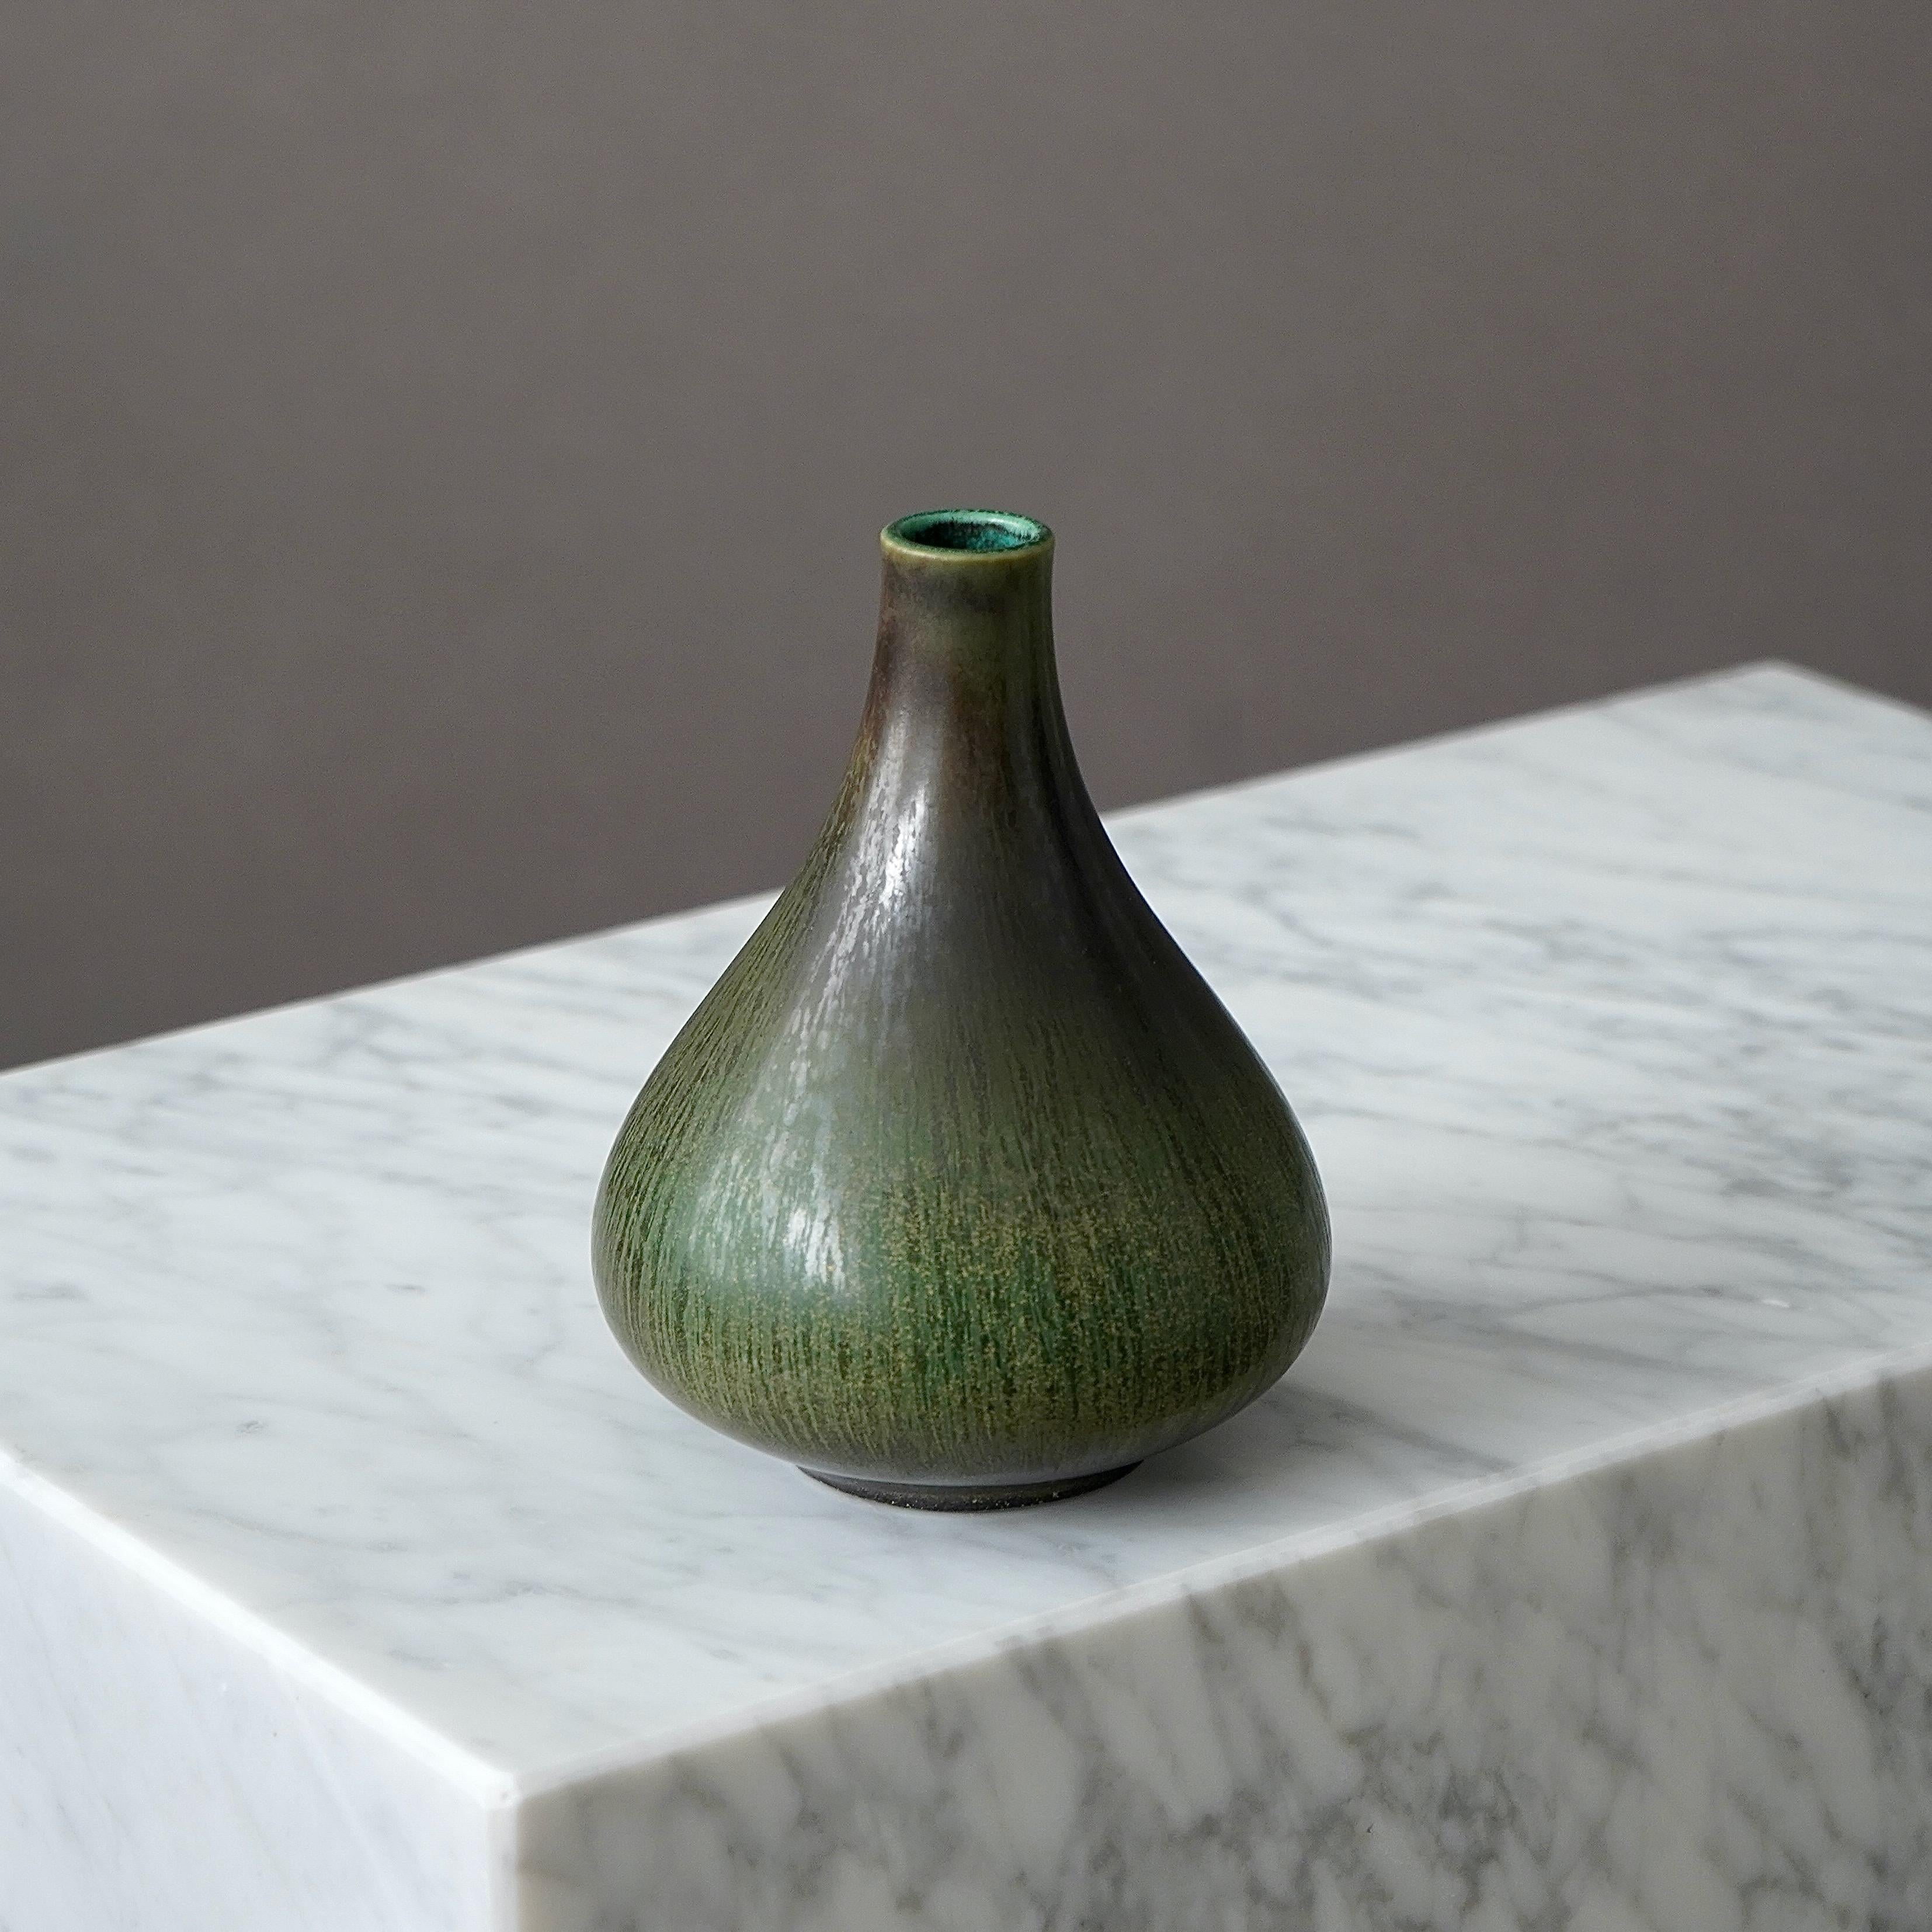 Un magnifique et rare vase en grès avec une glaçure étonnante. 
Conçu par Gunnar Nylund pour Rorstrand, Suède, années 1950.  

Signature incisée 